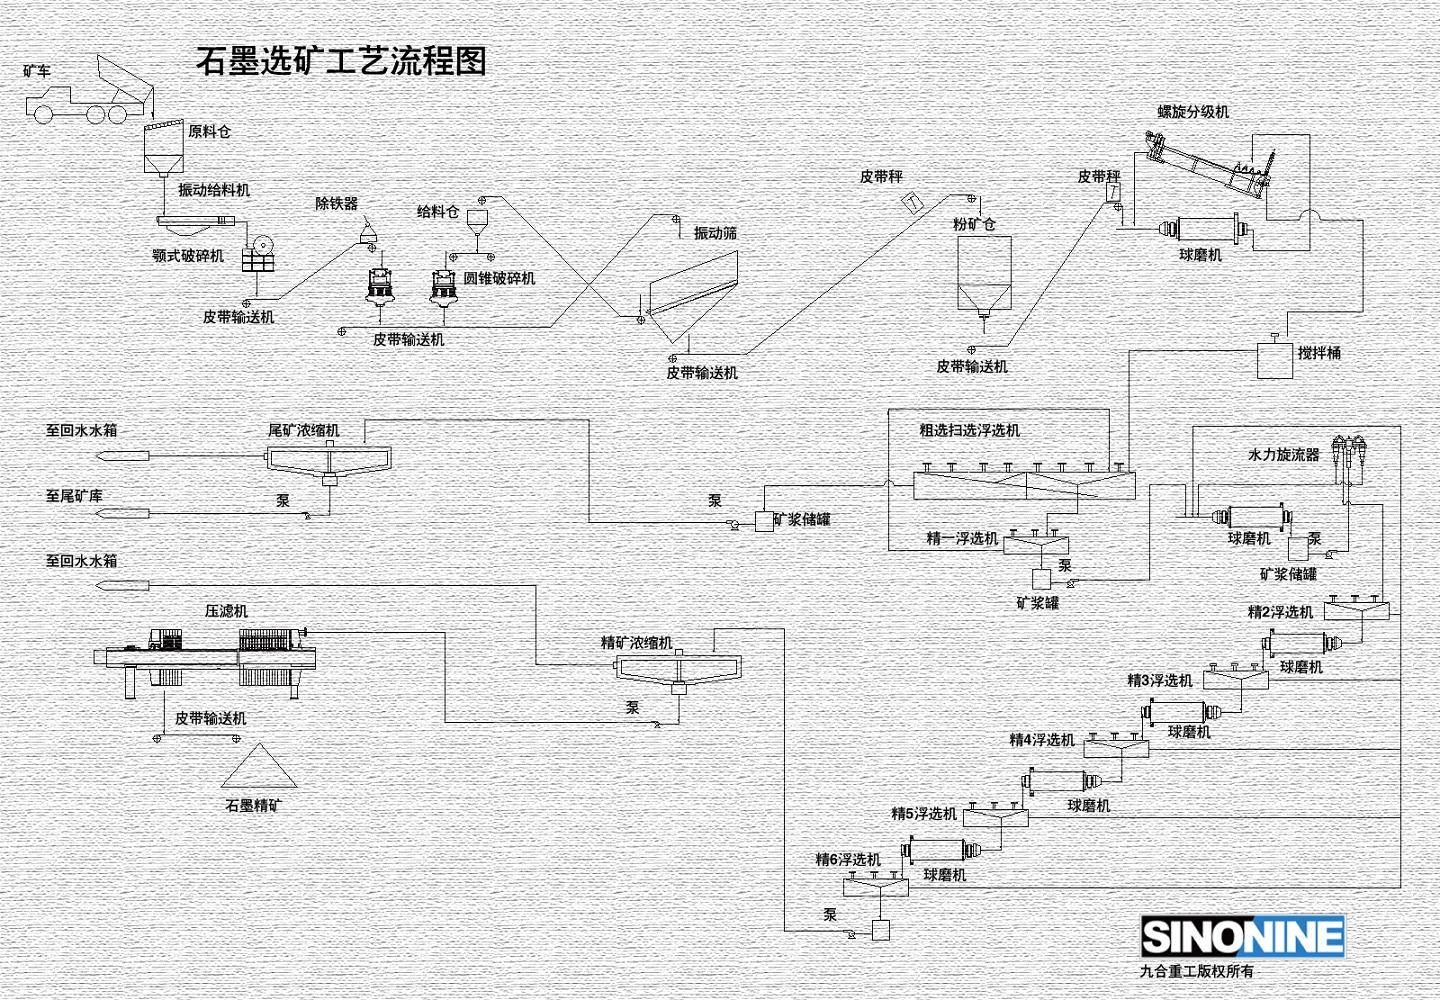 石墨选矿生产线流程图CN.jpg